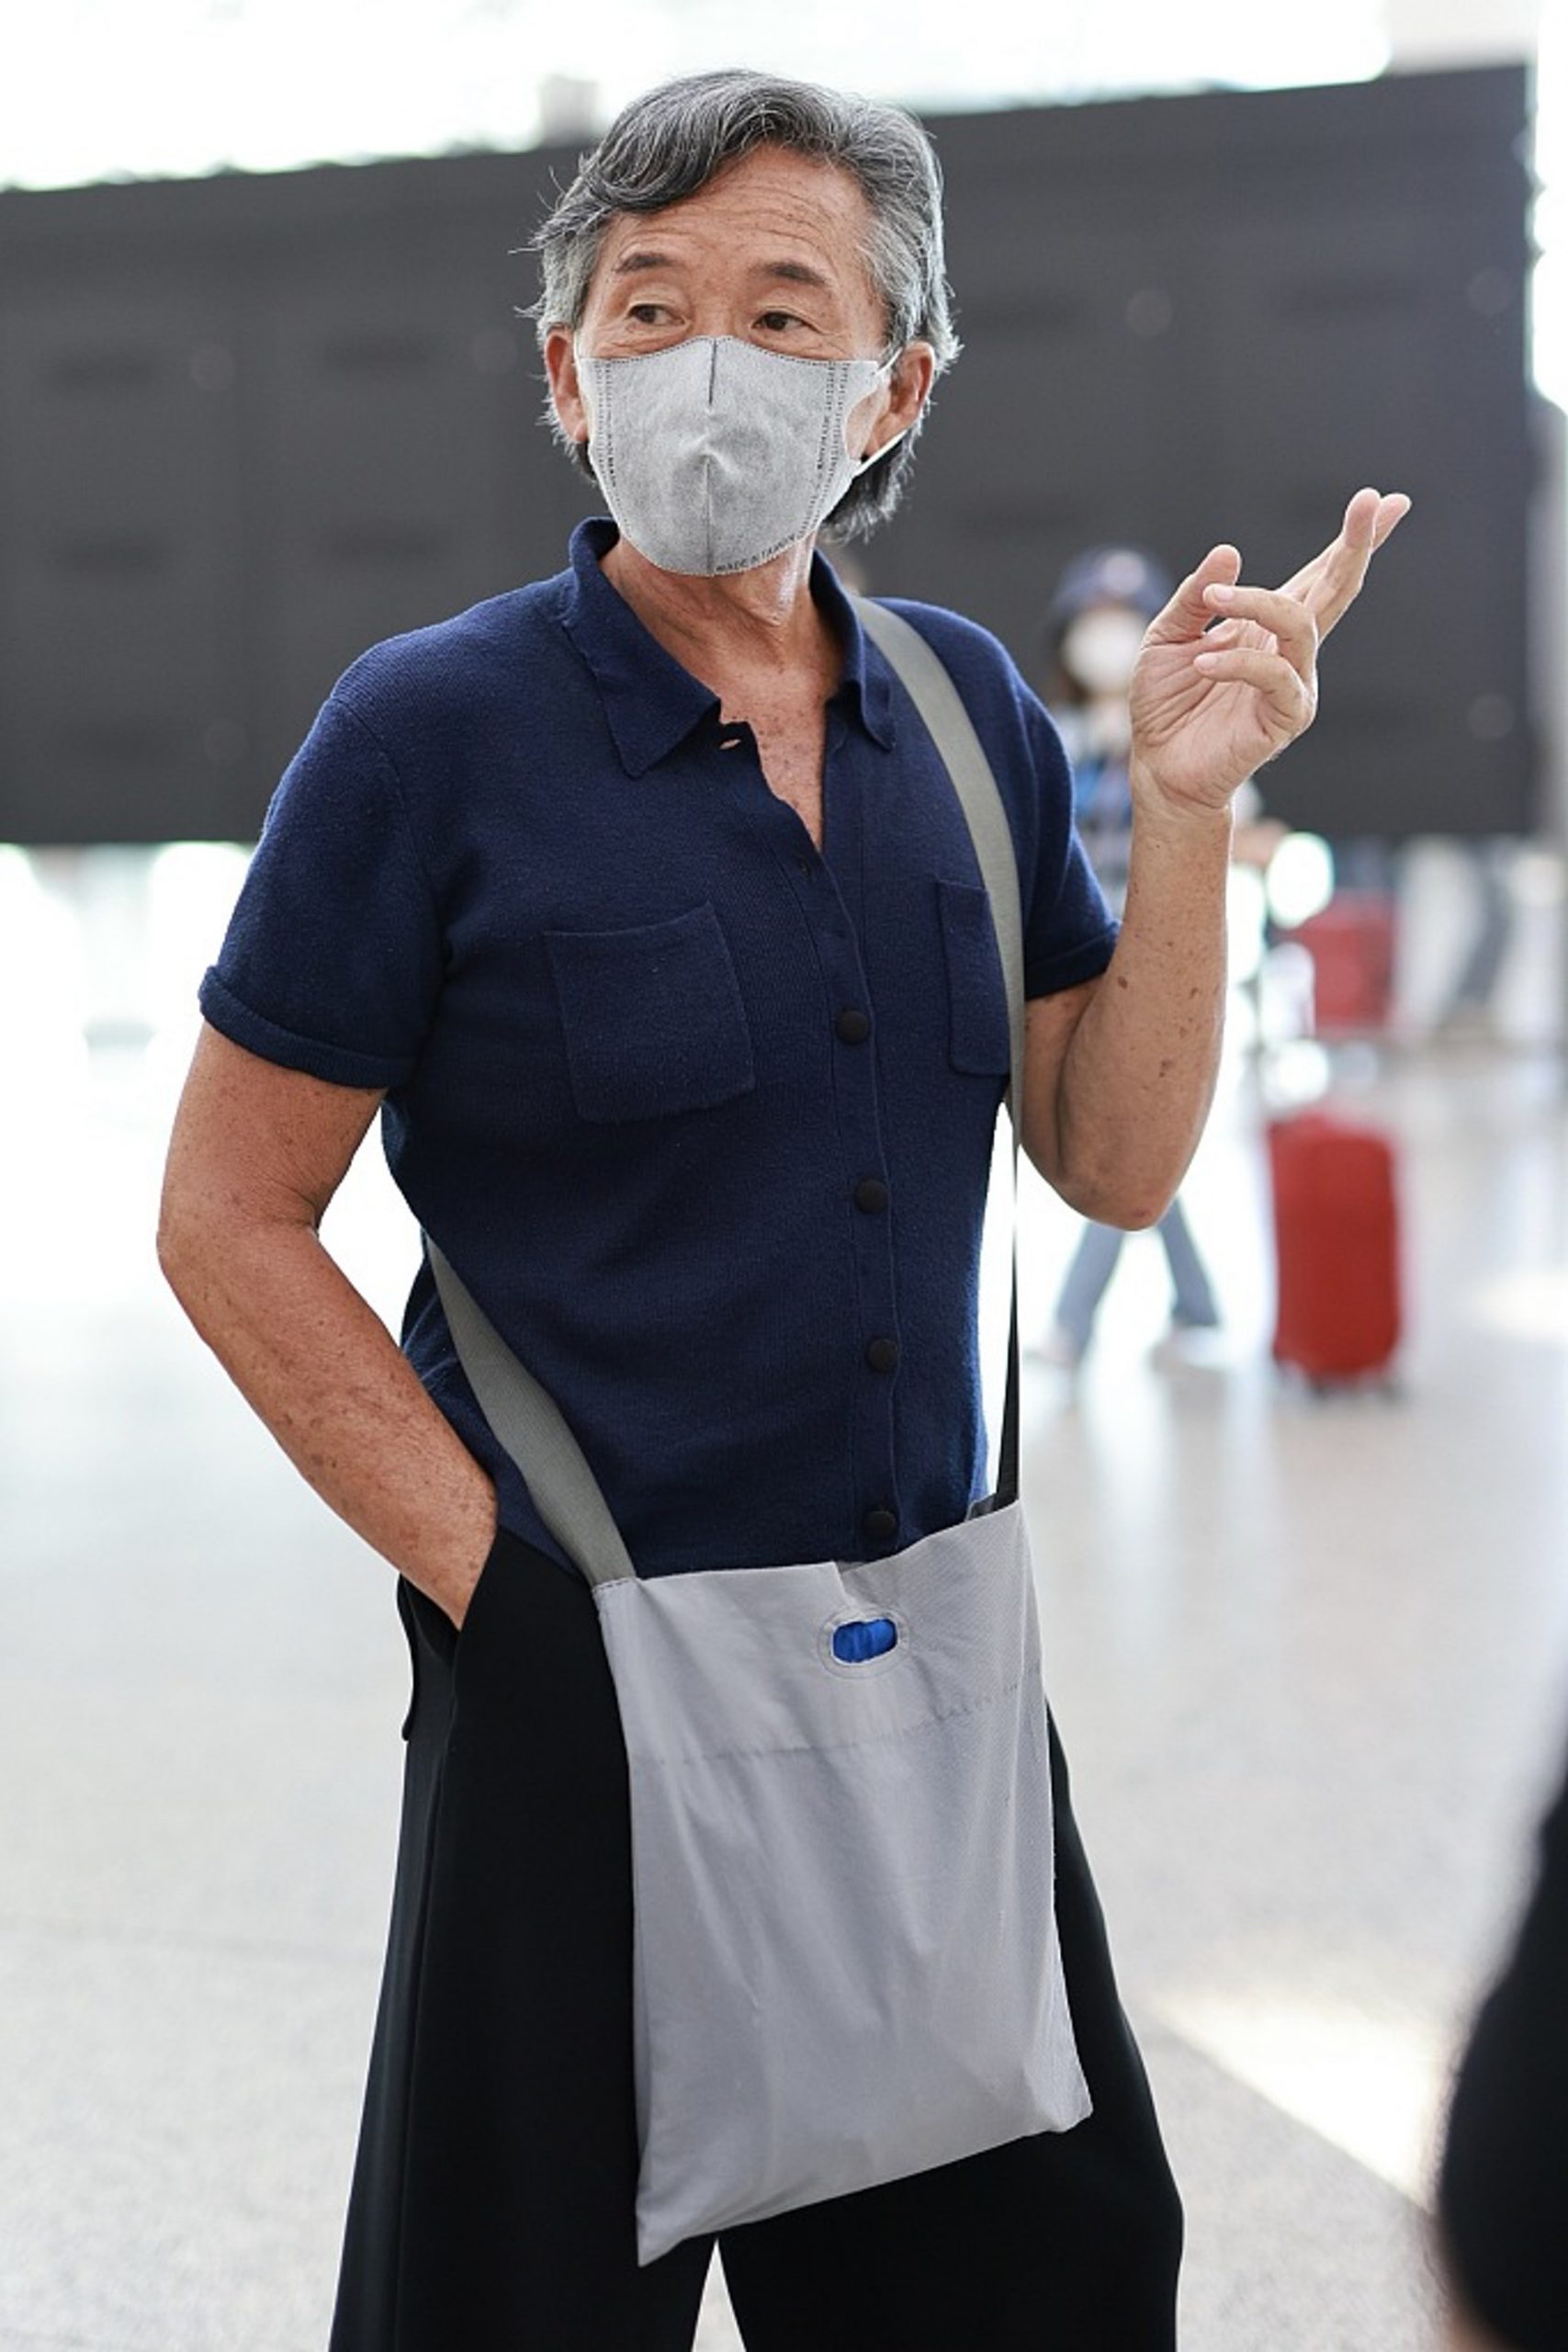  73岁林子祥斜背布袋现身机场‧打扮获赞接地气